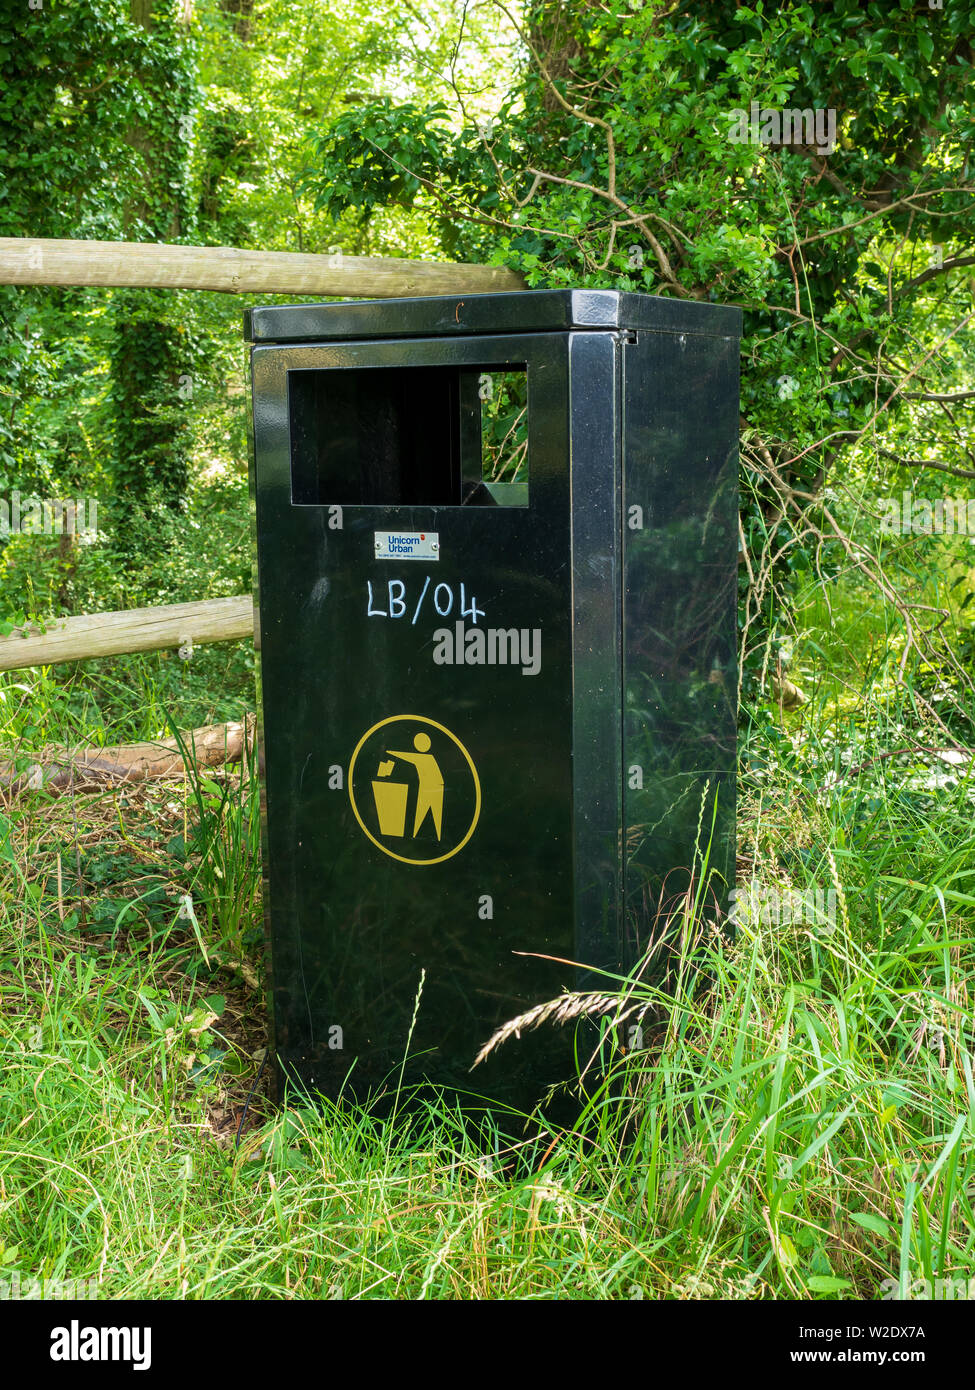 Grüner Metallmüllbehälter, der vom rat neben einem zur Verfügung gestellt wird Öffentlicher Fußweg im Wald, um die Menschen zu ermutigen, nicht zu fallen Wurf Stockfoto